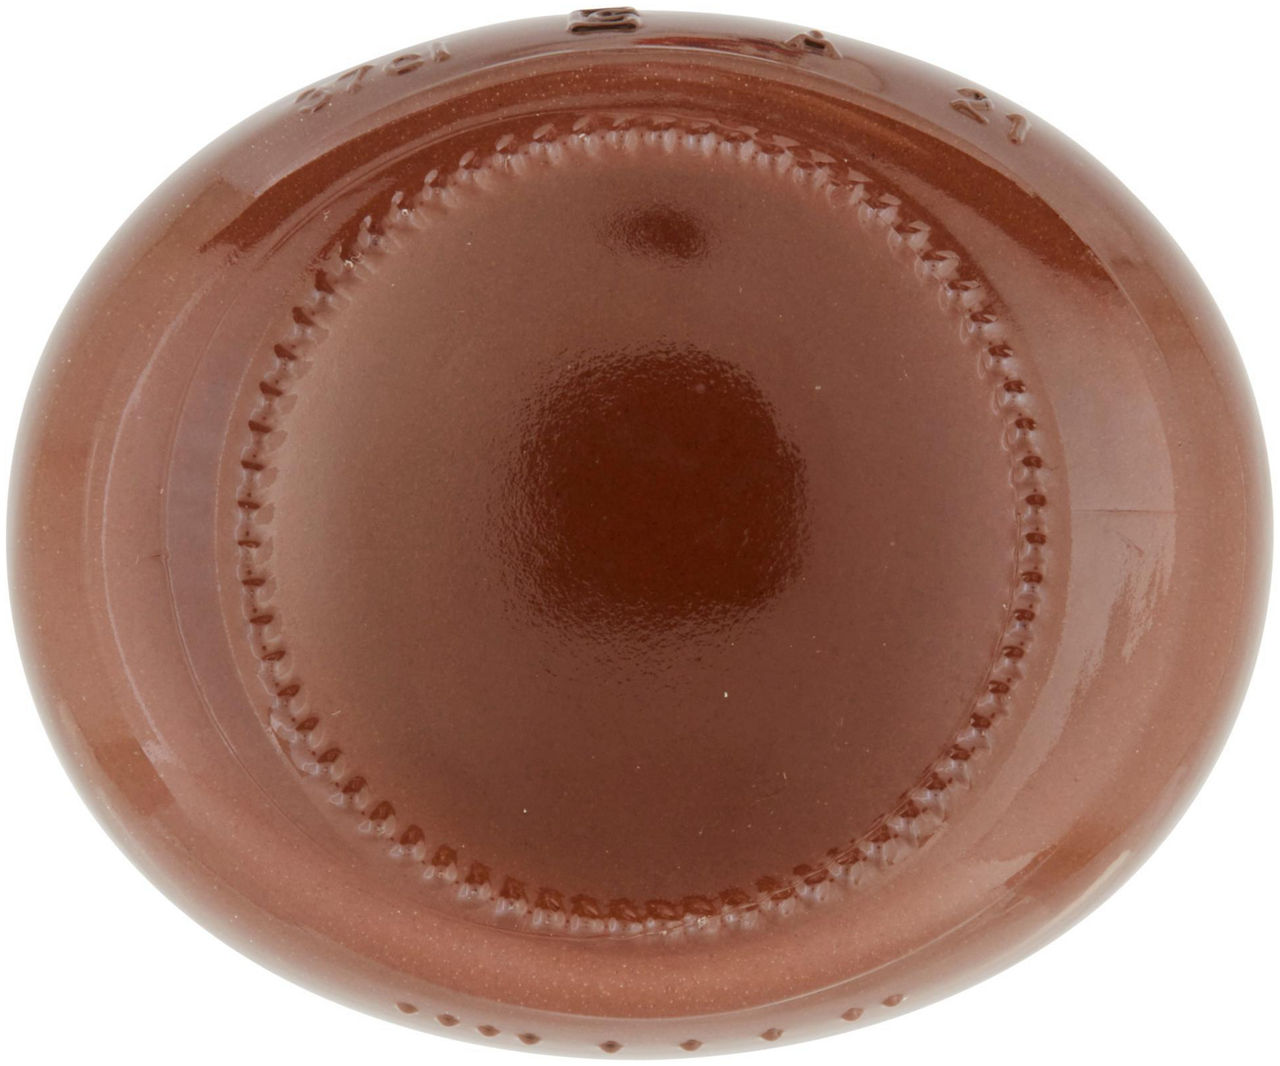 Crema Spalmabile con Nocciole e Cacao Magro 350 g - 5